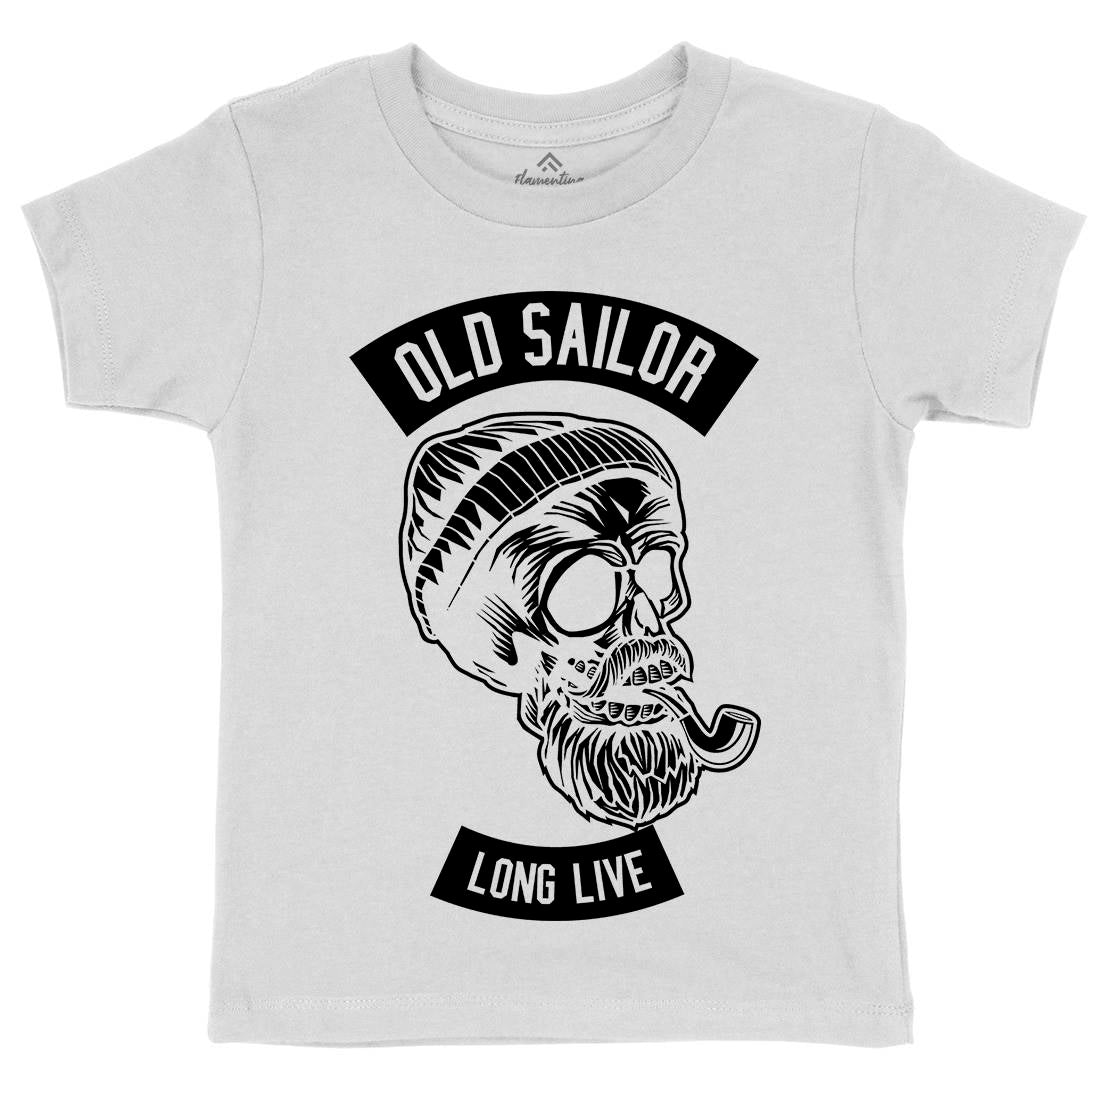 Old Sailor Kids Crew Neck T-Shirt Navy B590